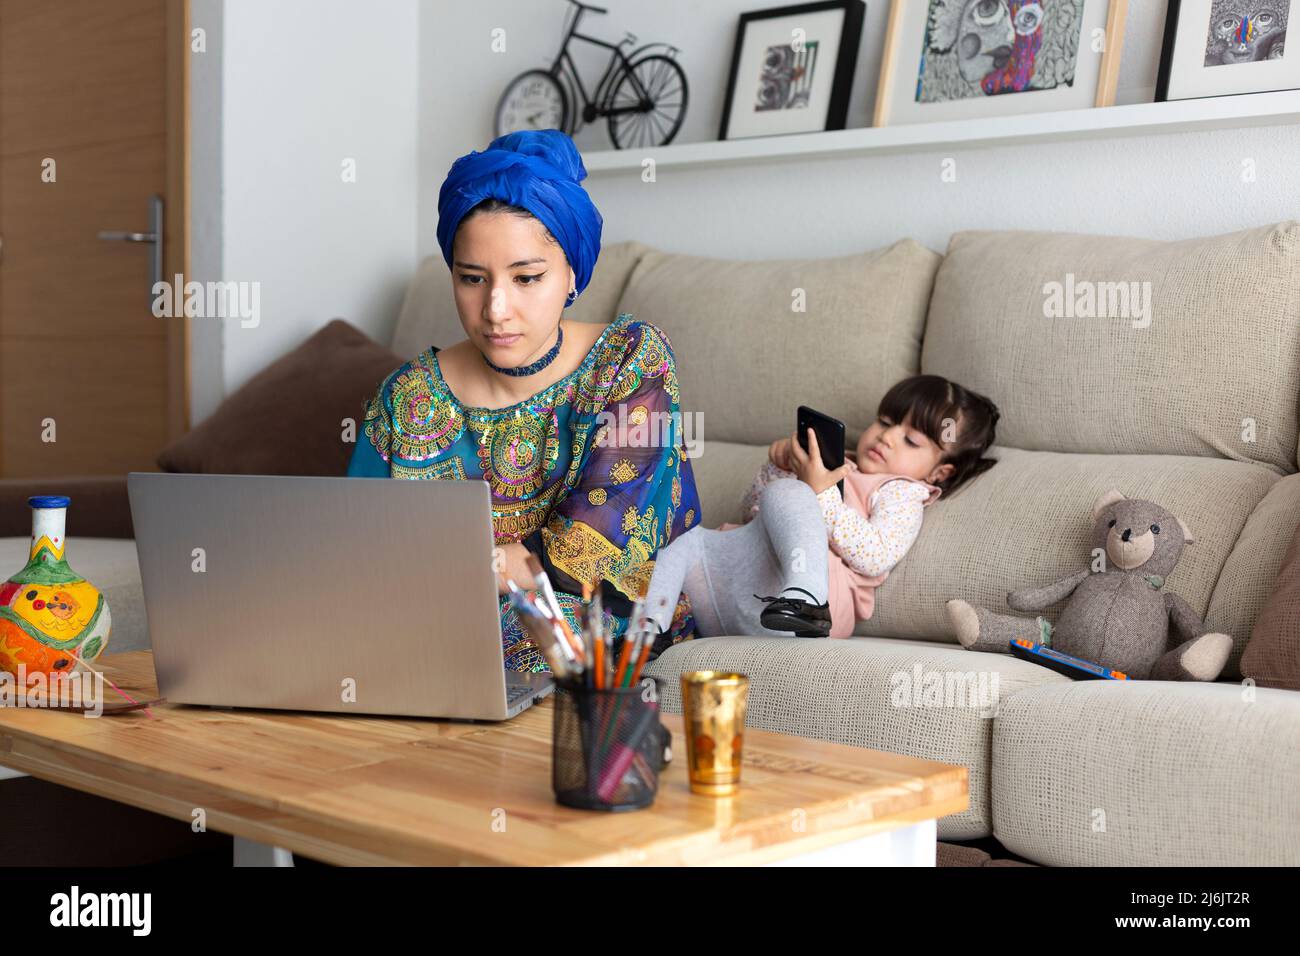 Junge muslimische Frau, die zu Hause mit ihrem Laptop arbeitet, während ihre junge Tochter mit einem Mobiltelefon spielt. Alleinerziehende Familie. Stockfoto